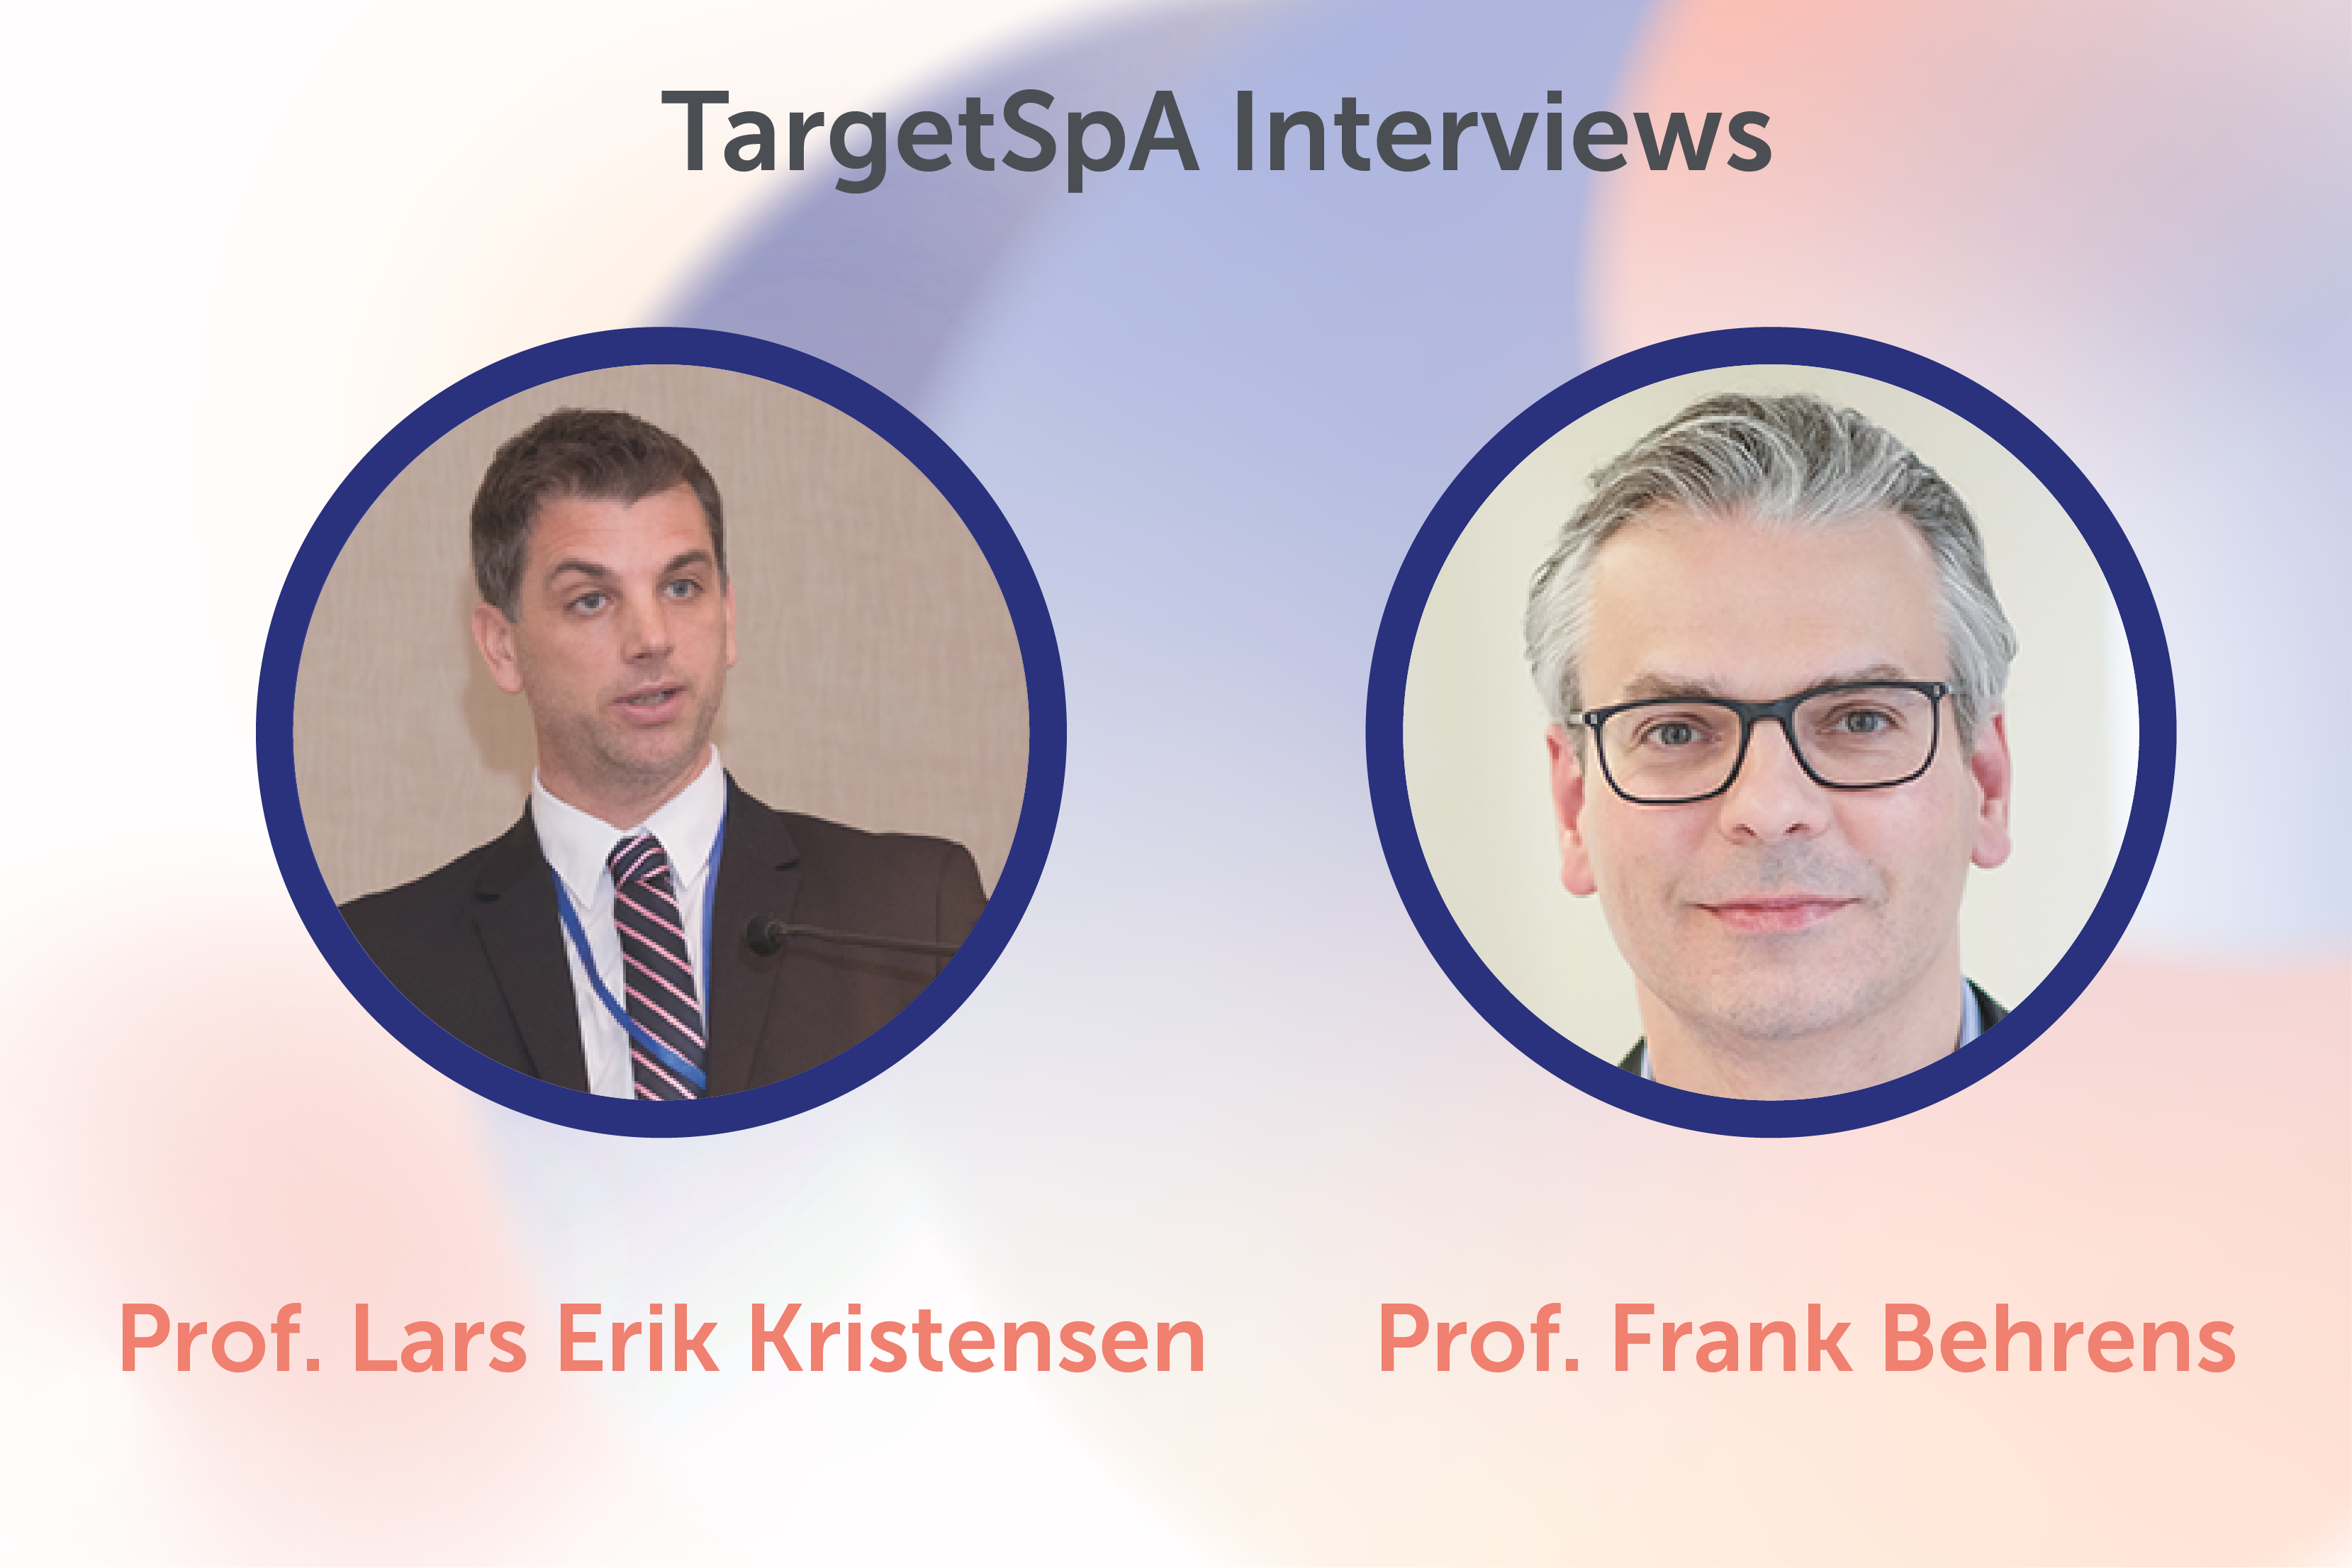 TargetSpA Interviews with Prof. Lars Erik Kristensen and Prof. Frank Behrens